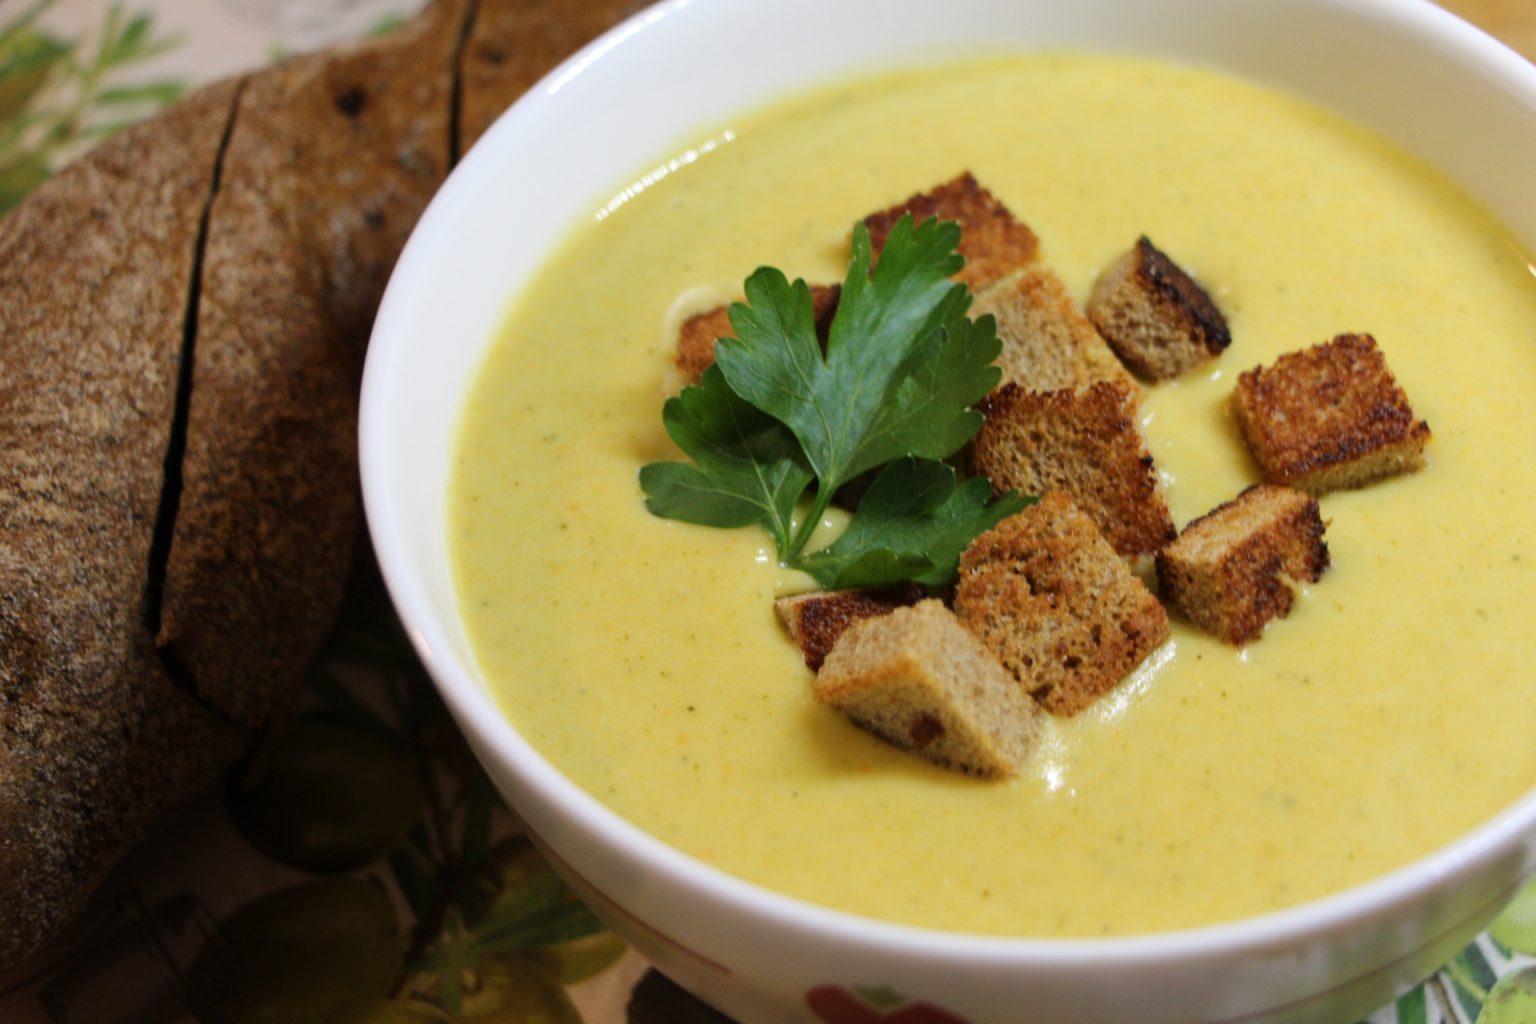 Как приготовить суп-пюре: 30 лучших простых и незабываемых рецептов